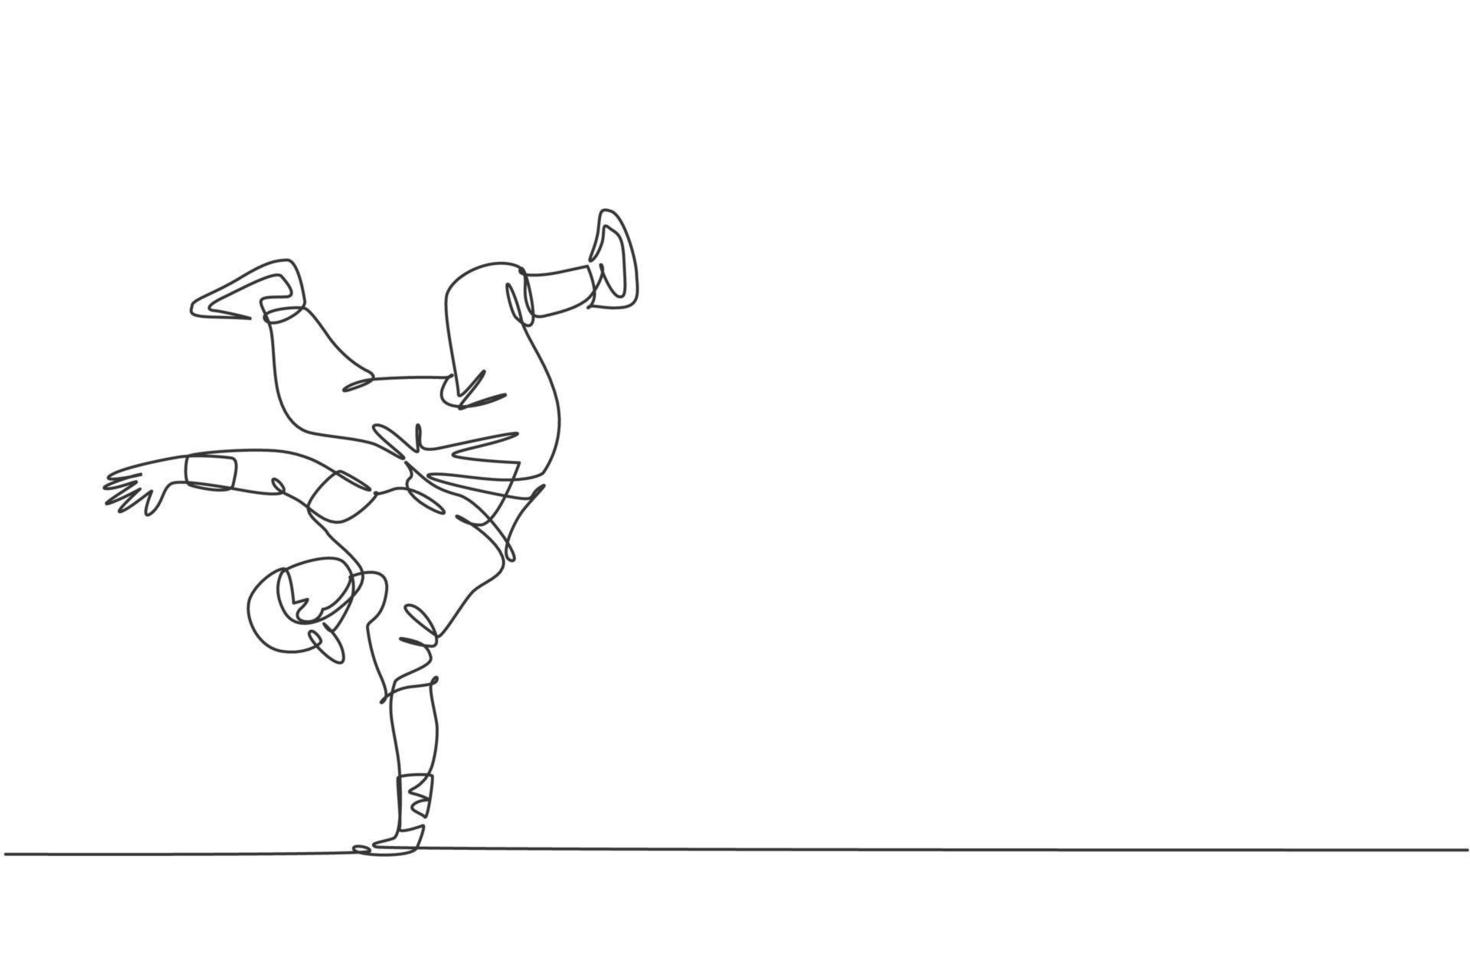 Un dibujo de línea continua de un joven bailarín de break deportivo con camisa casual muestra el estilo de baile hiphop en la calle. concepto de deporte de estilo de vida urbano. Ilustración de vector de diseño de dibujo de línea única dinámica